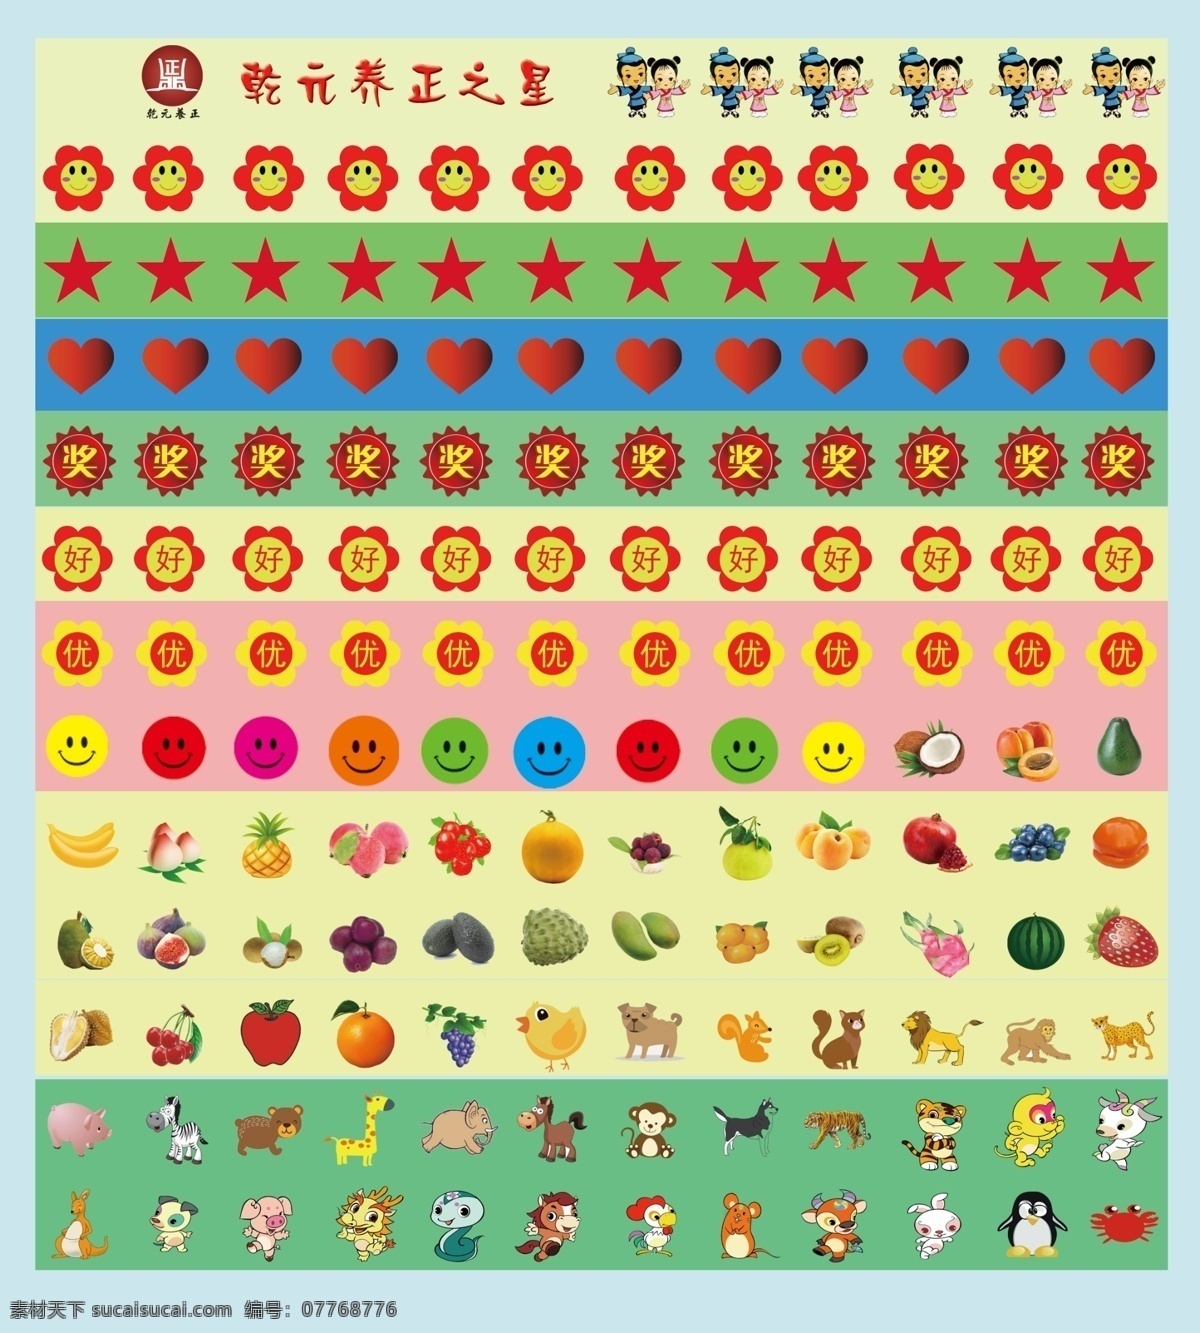 奖励 贴纸 幼儿园 宝宝 粘贴 奖字 心形 水果 动物 五星 设计图 招贴设计